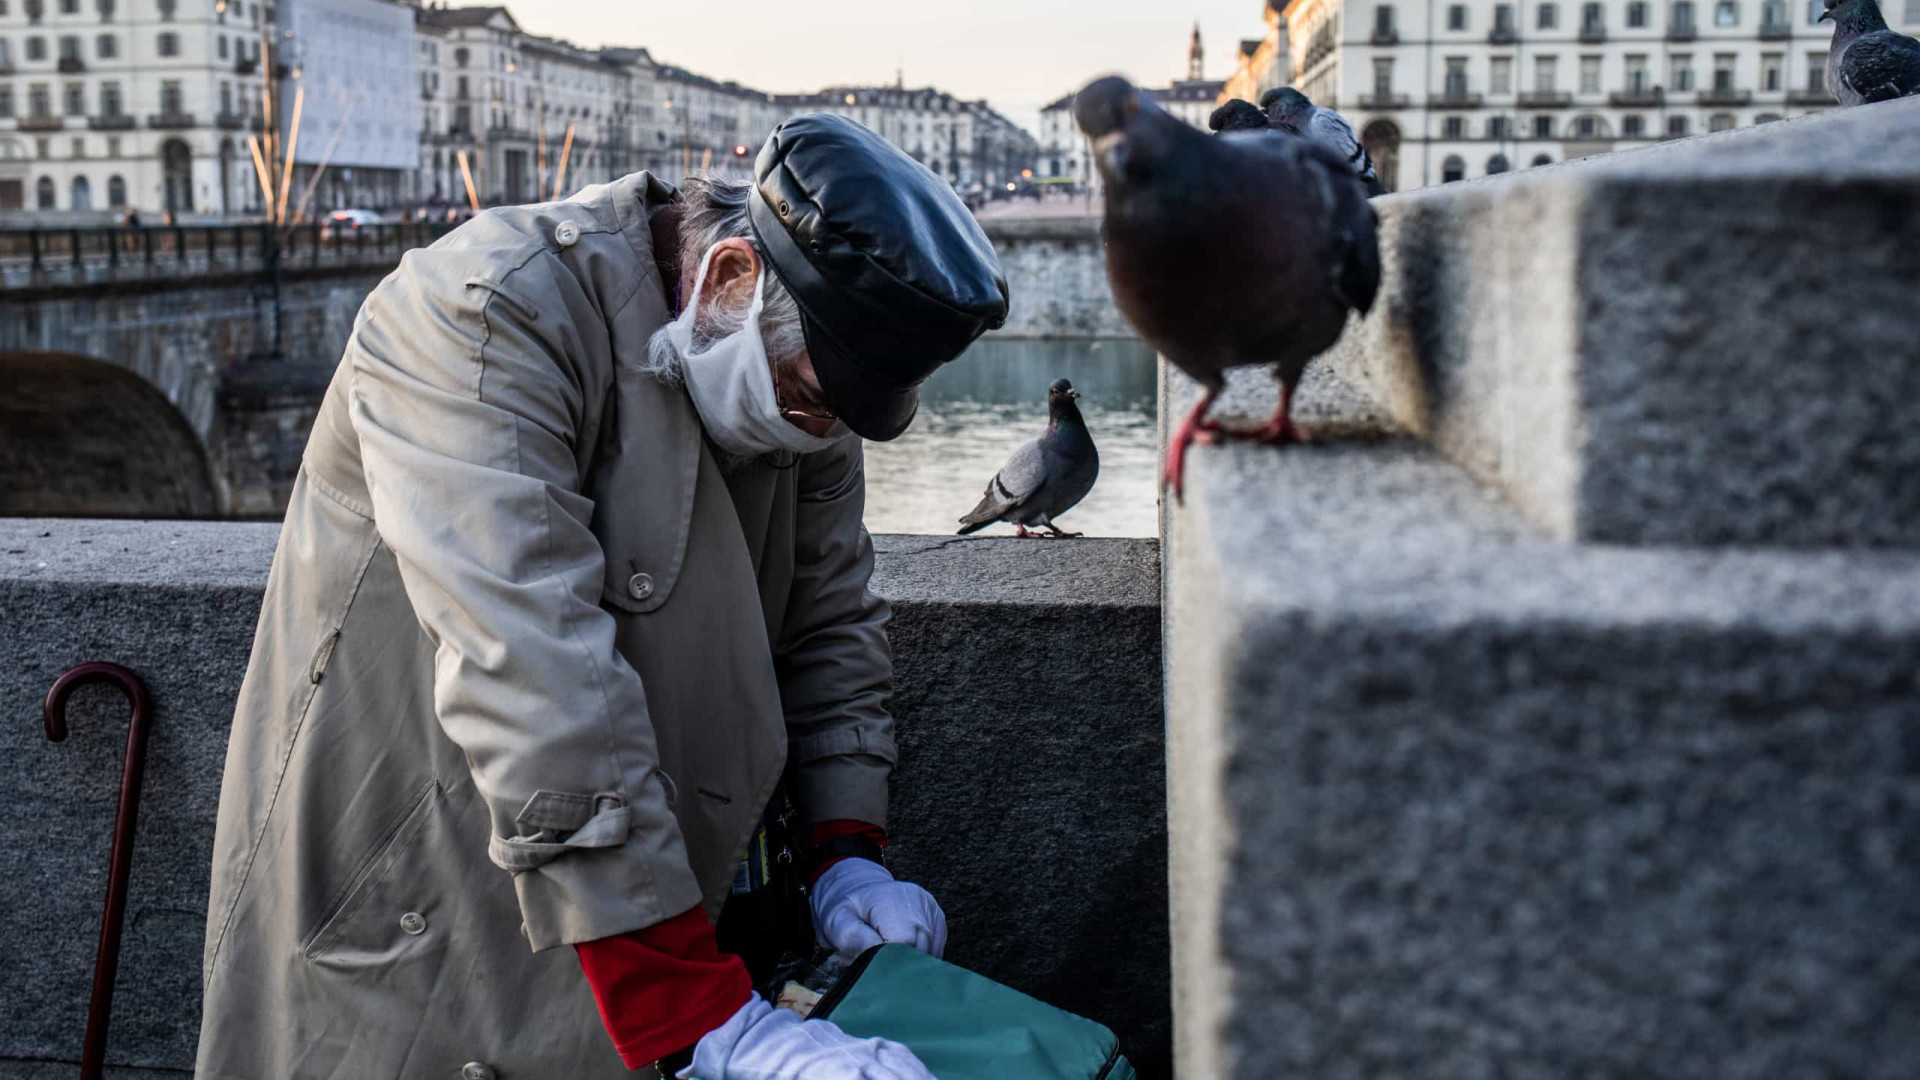 Pobreza na Itália atinge pior nível em 15 anos, diz pesquisa